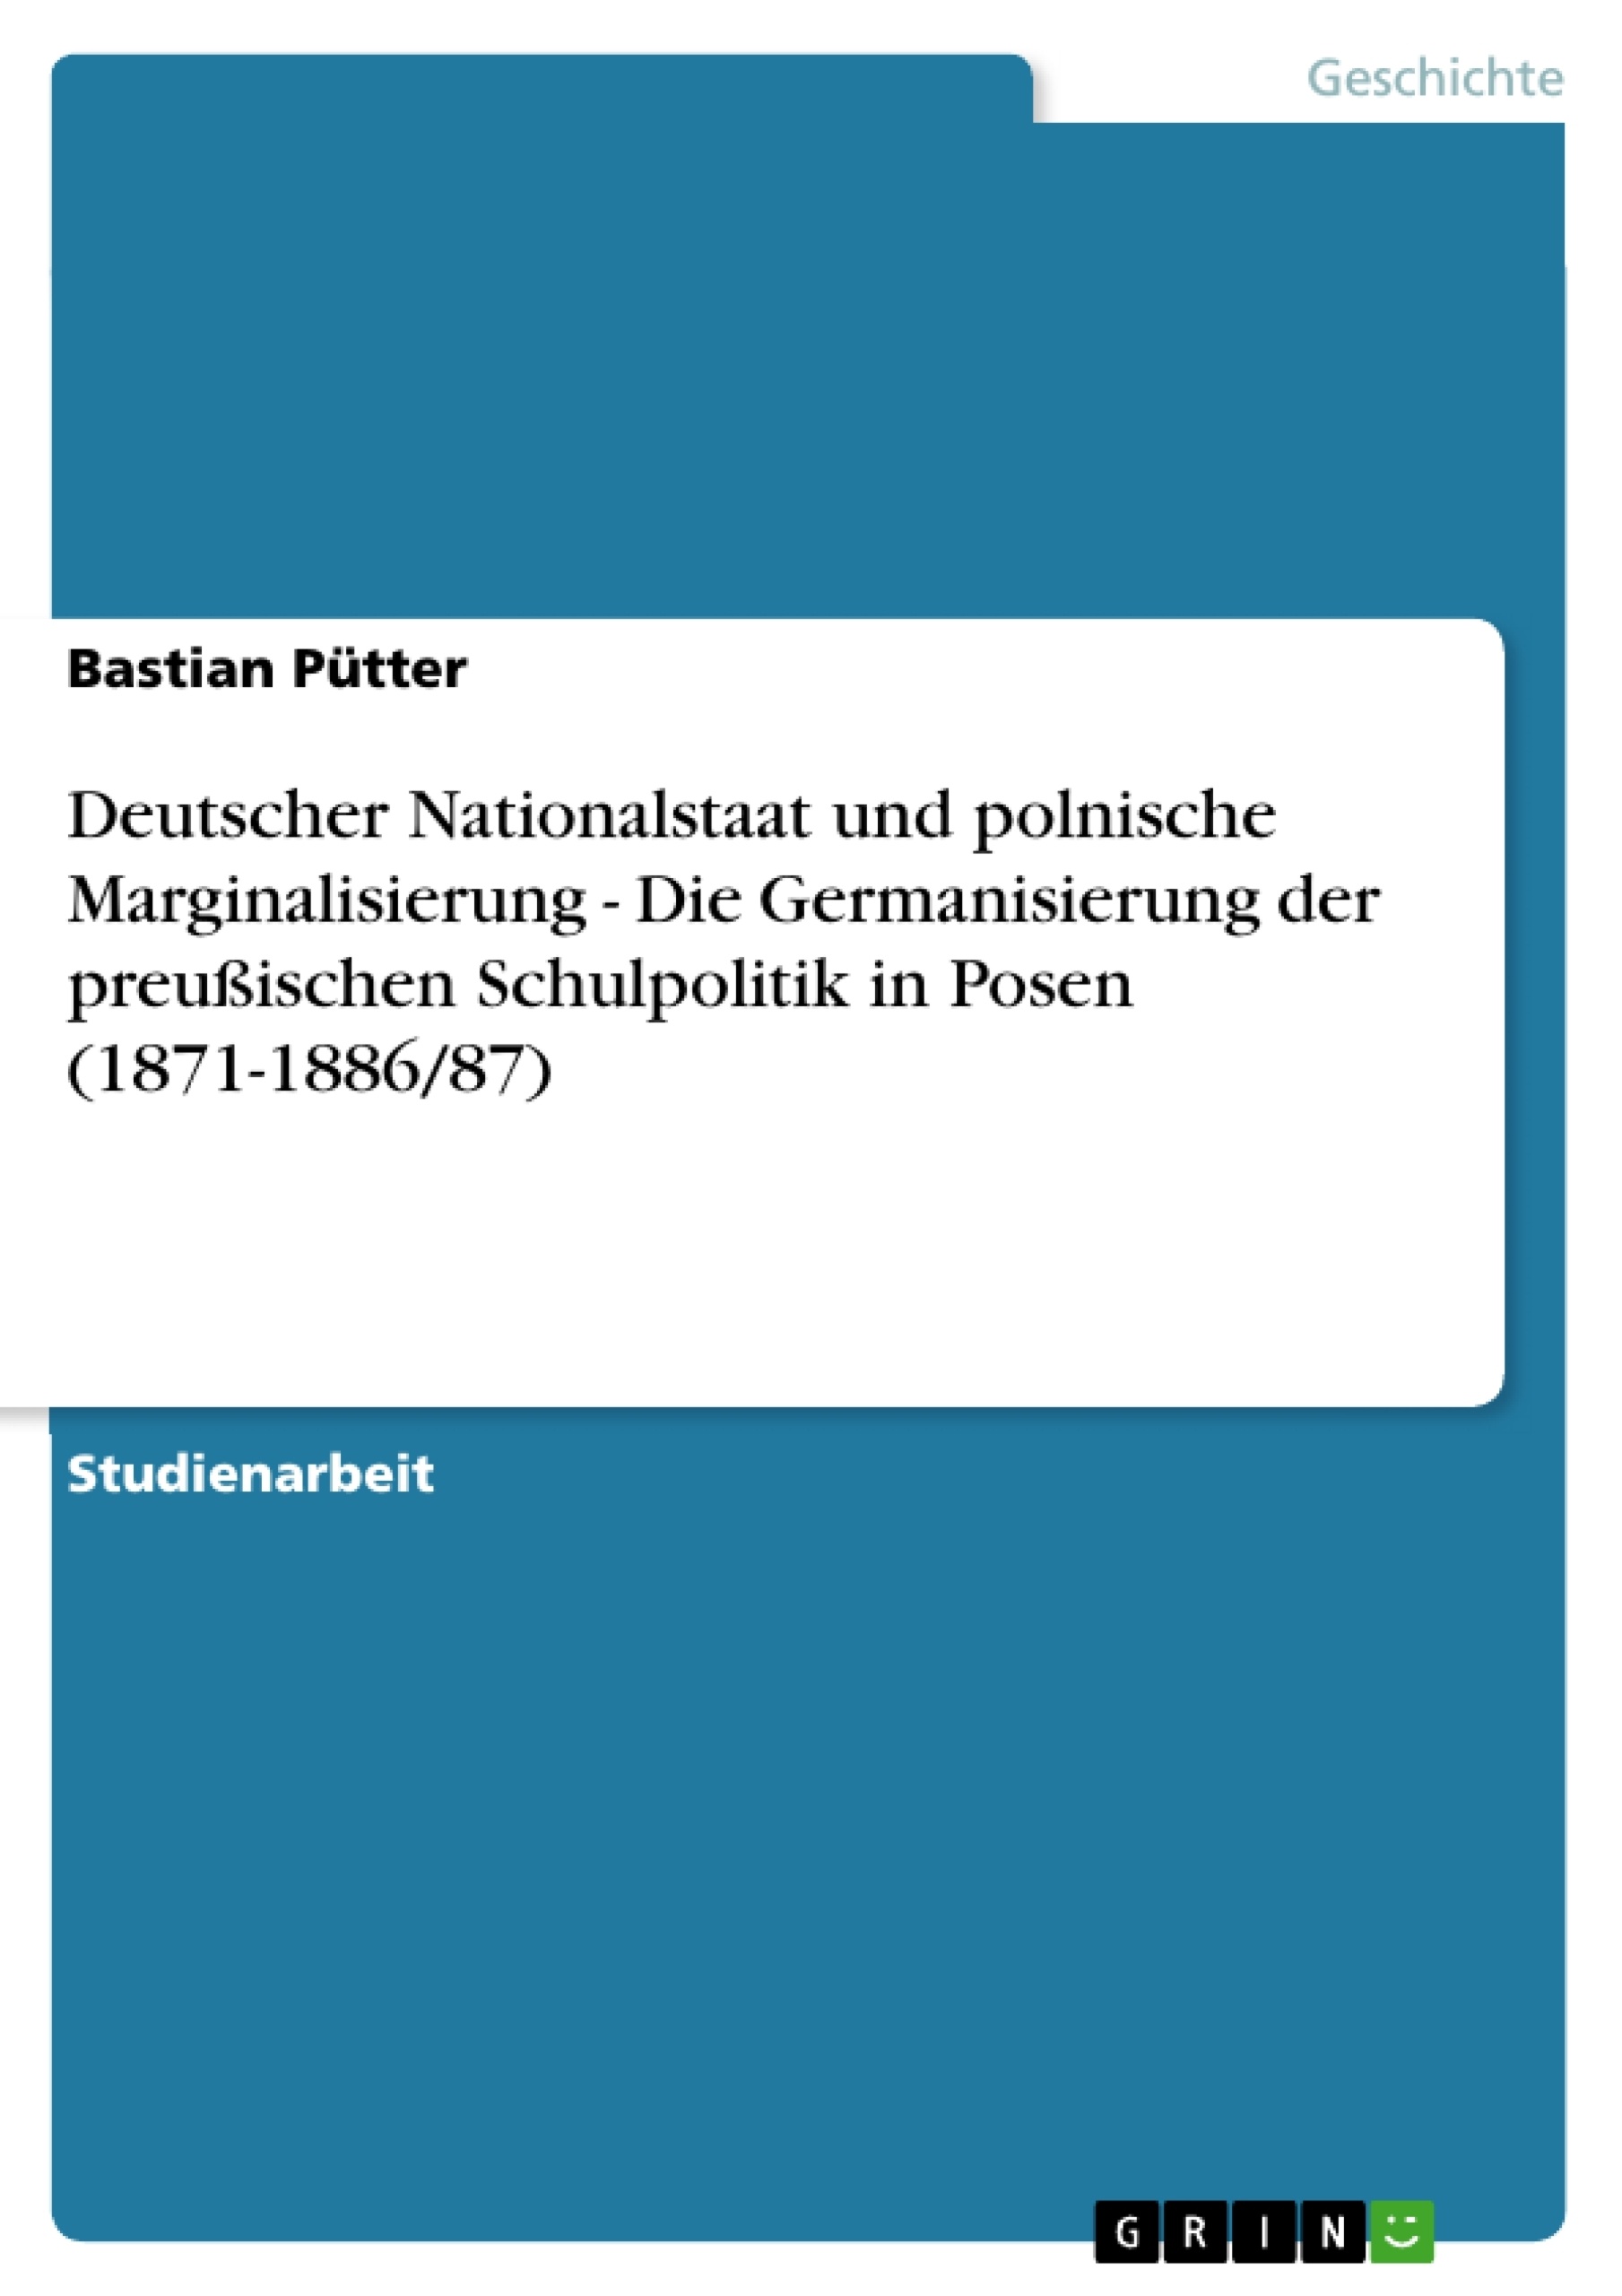 Title: Deutscher Nationalstaat und polnische Marginalisierung - Die Germanisierung der preußischen Schulpolitik in Posen (1871-1886/87)